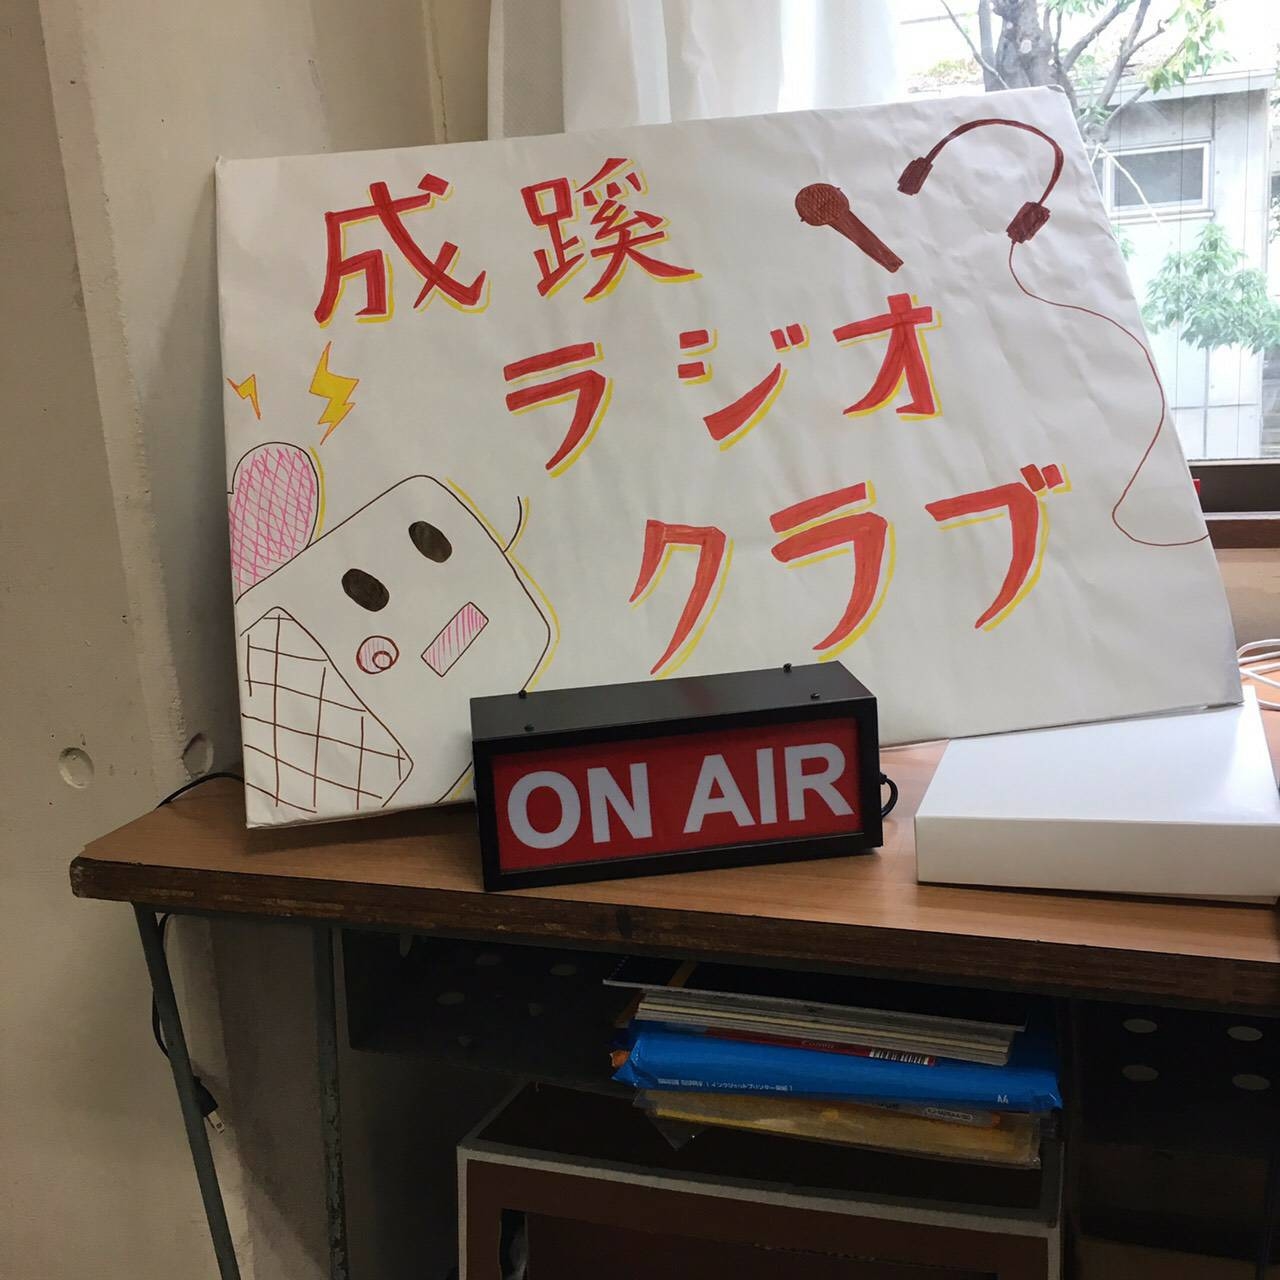 【課外活動団体紹介】成蹊ラジオクラブ